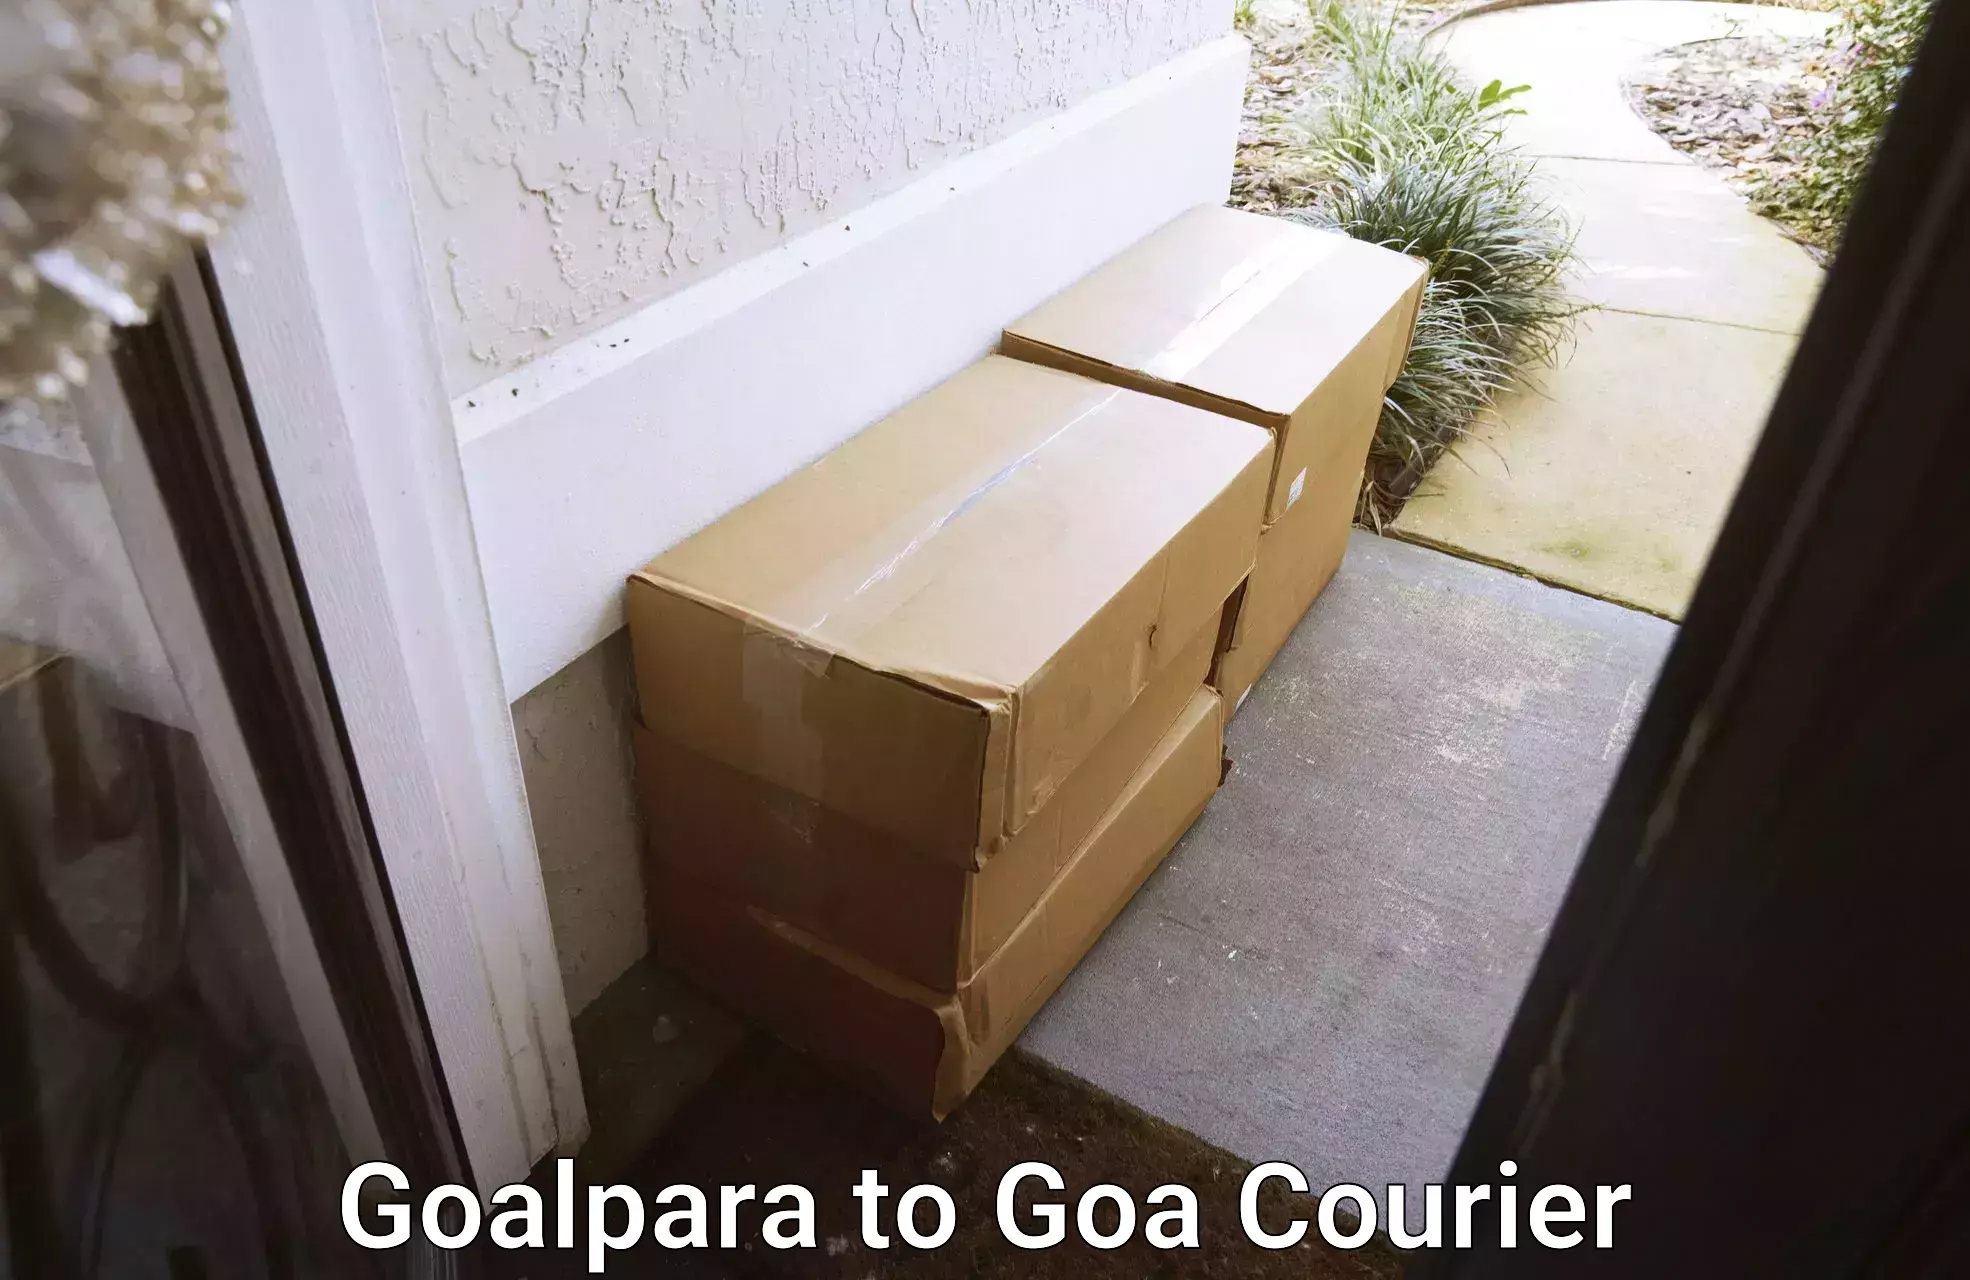 Premium courier solutions Goalpara to Goa University